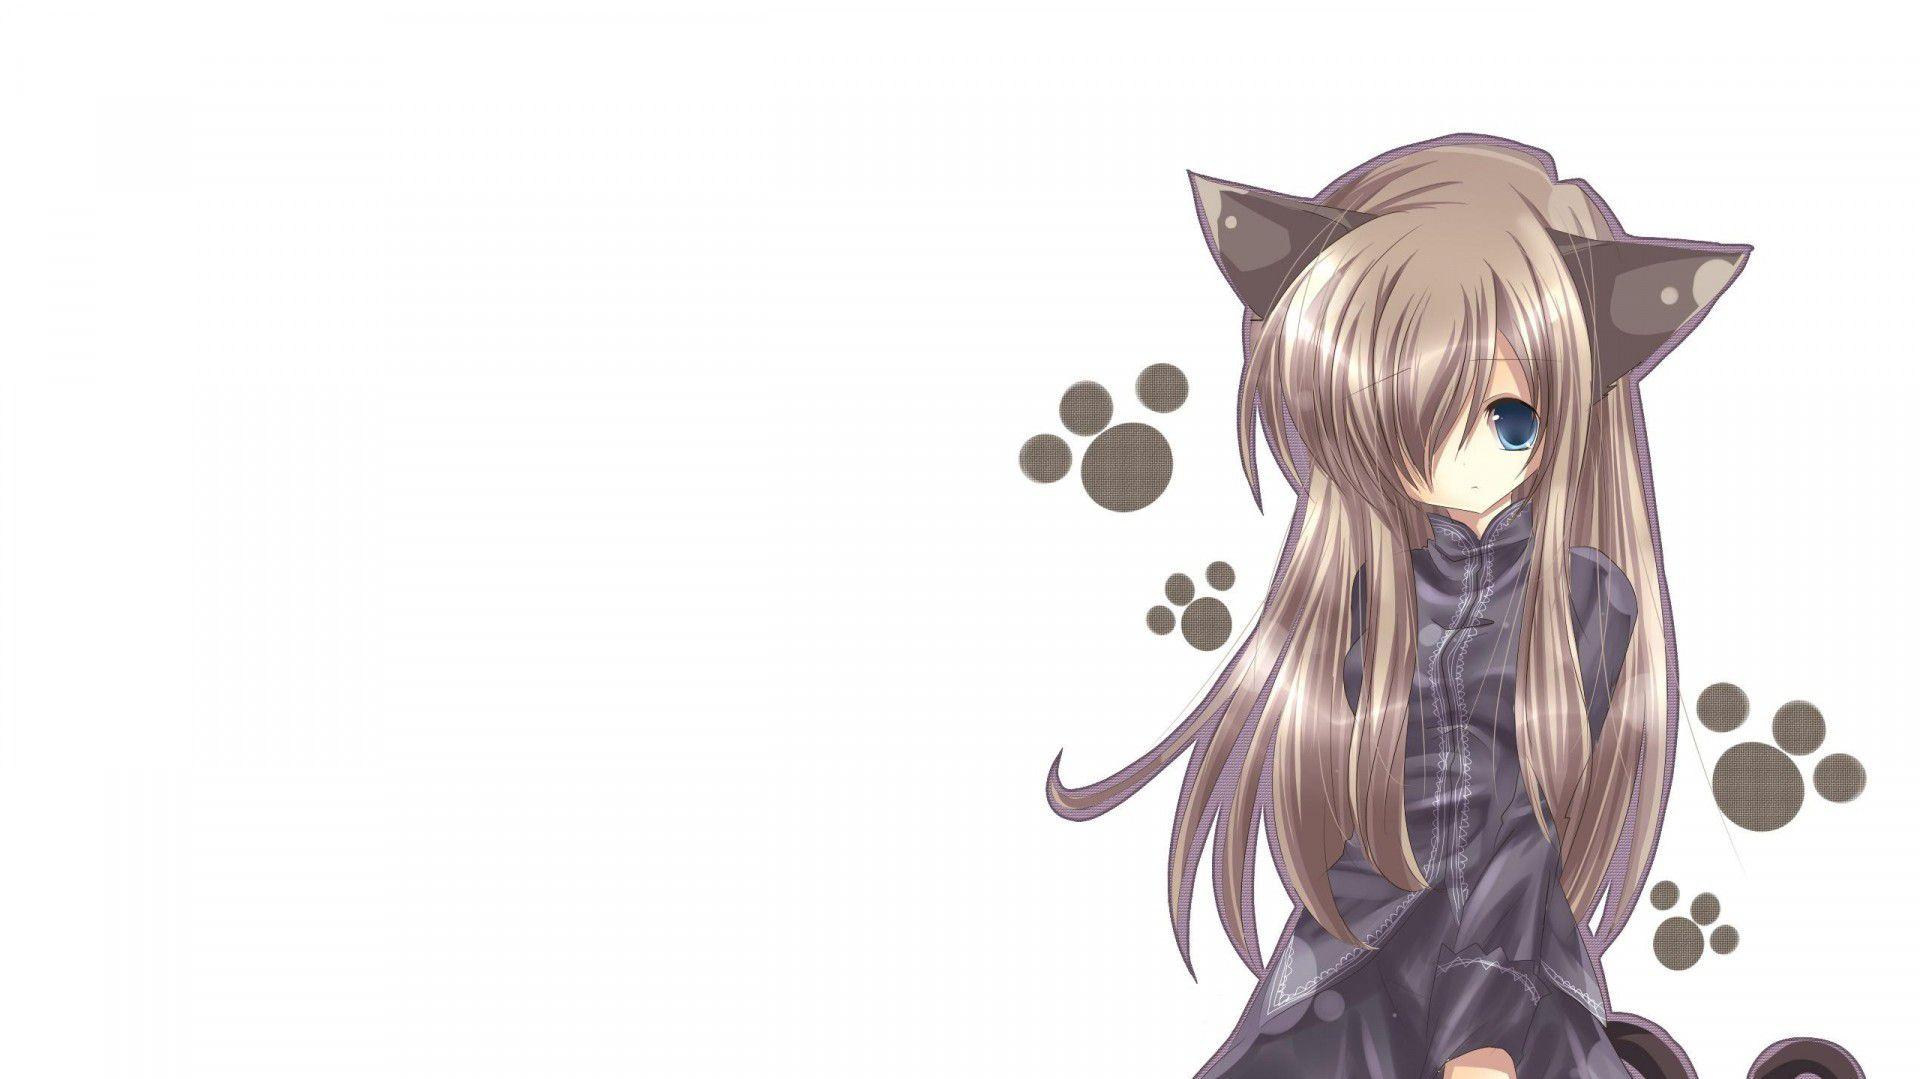 Anime Cat Girl HD Wallpaper For Desktop Pc Laptop